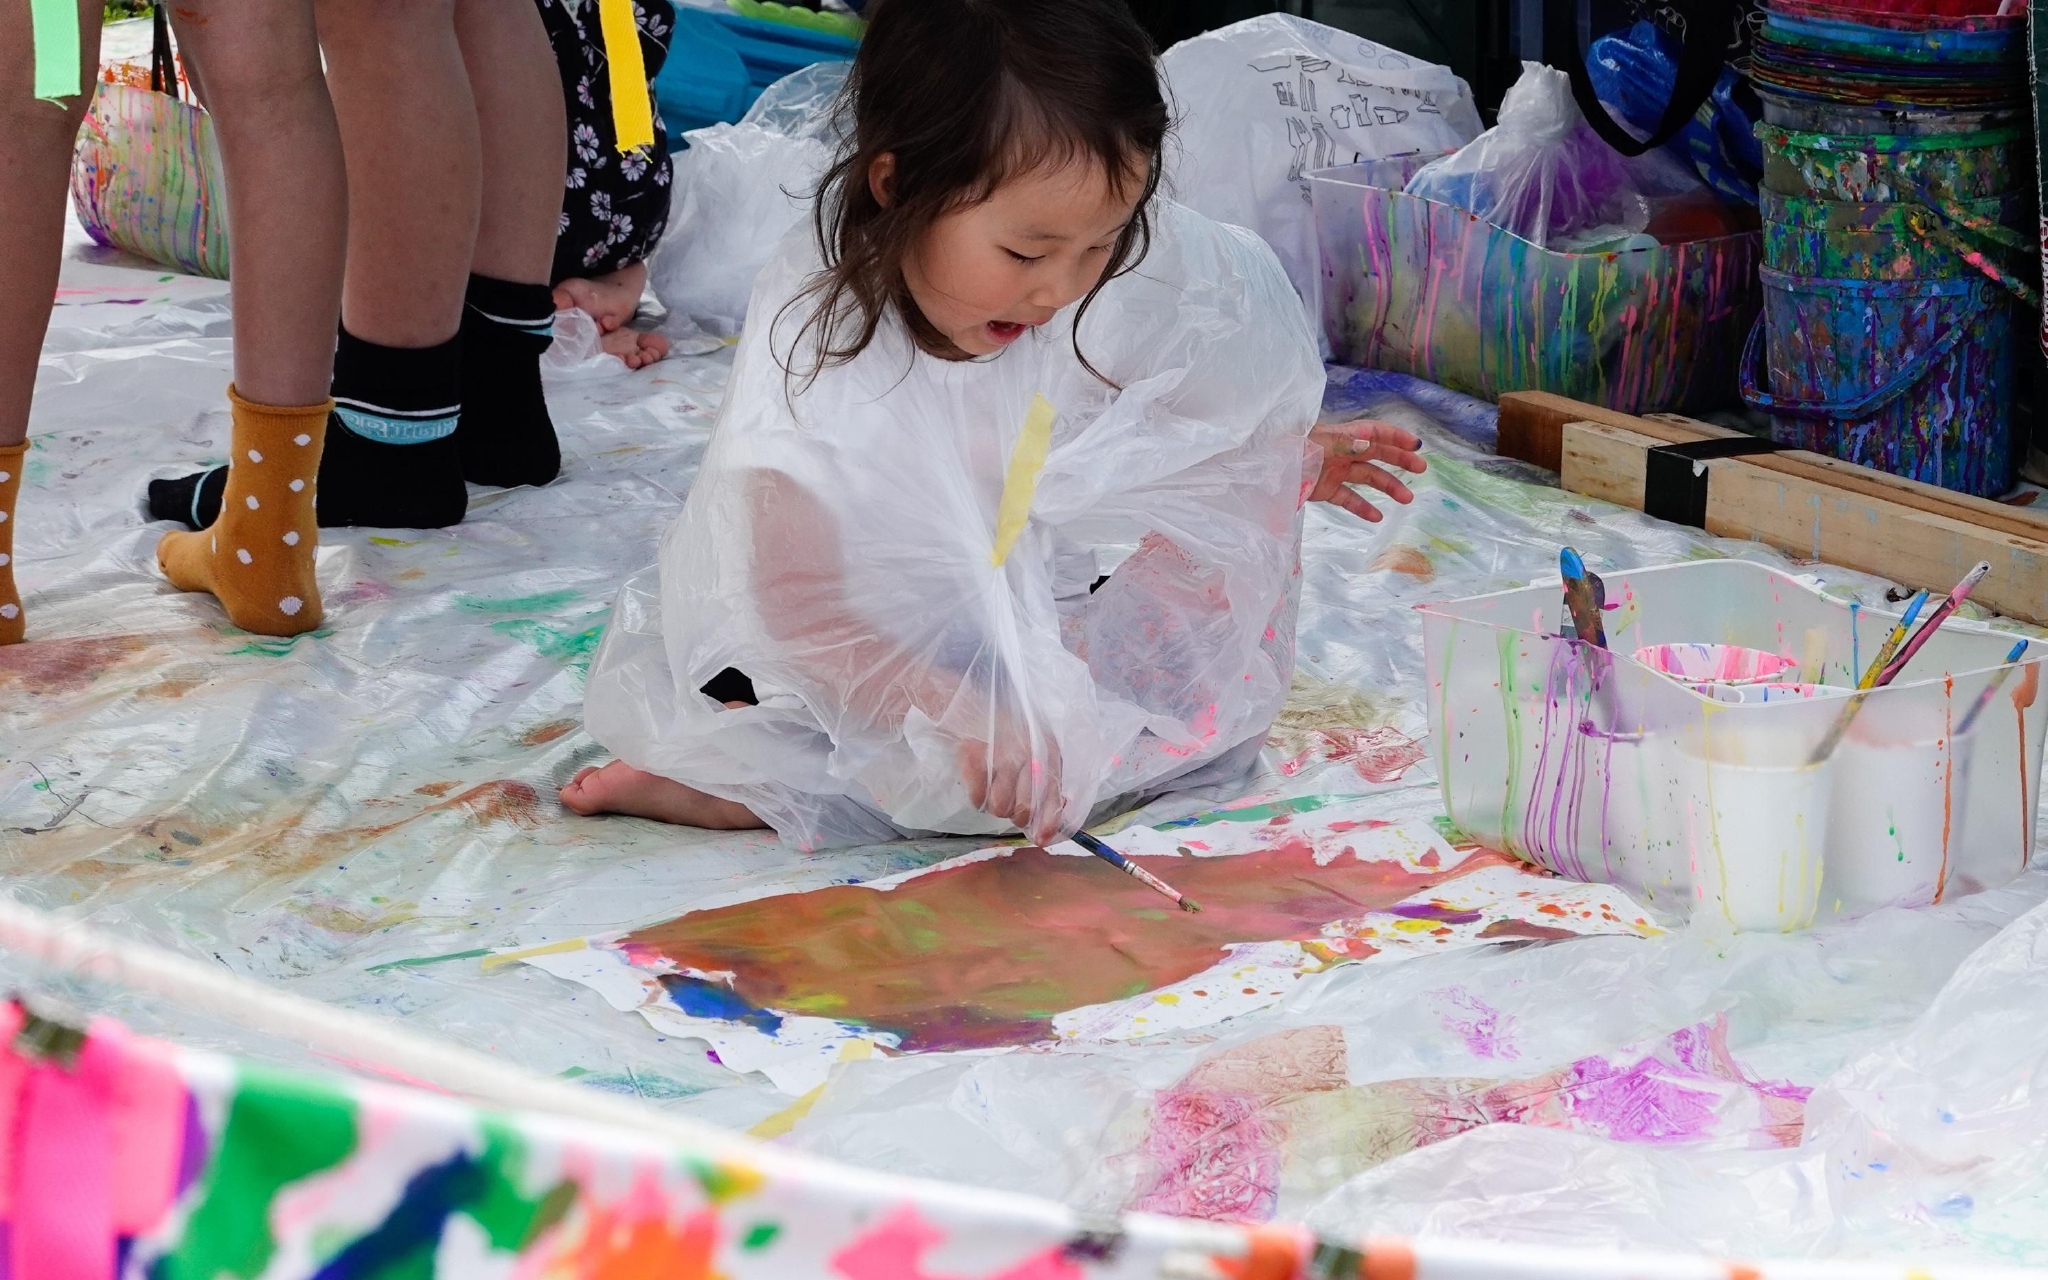 ▲6月4日，小朋友在日本东京跳蚤市集儿童区涂鸦玩耍。图/新华社